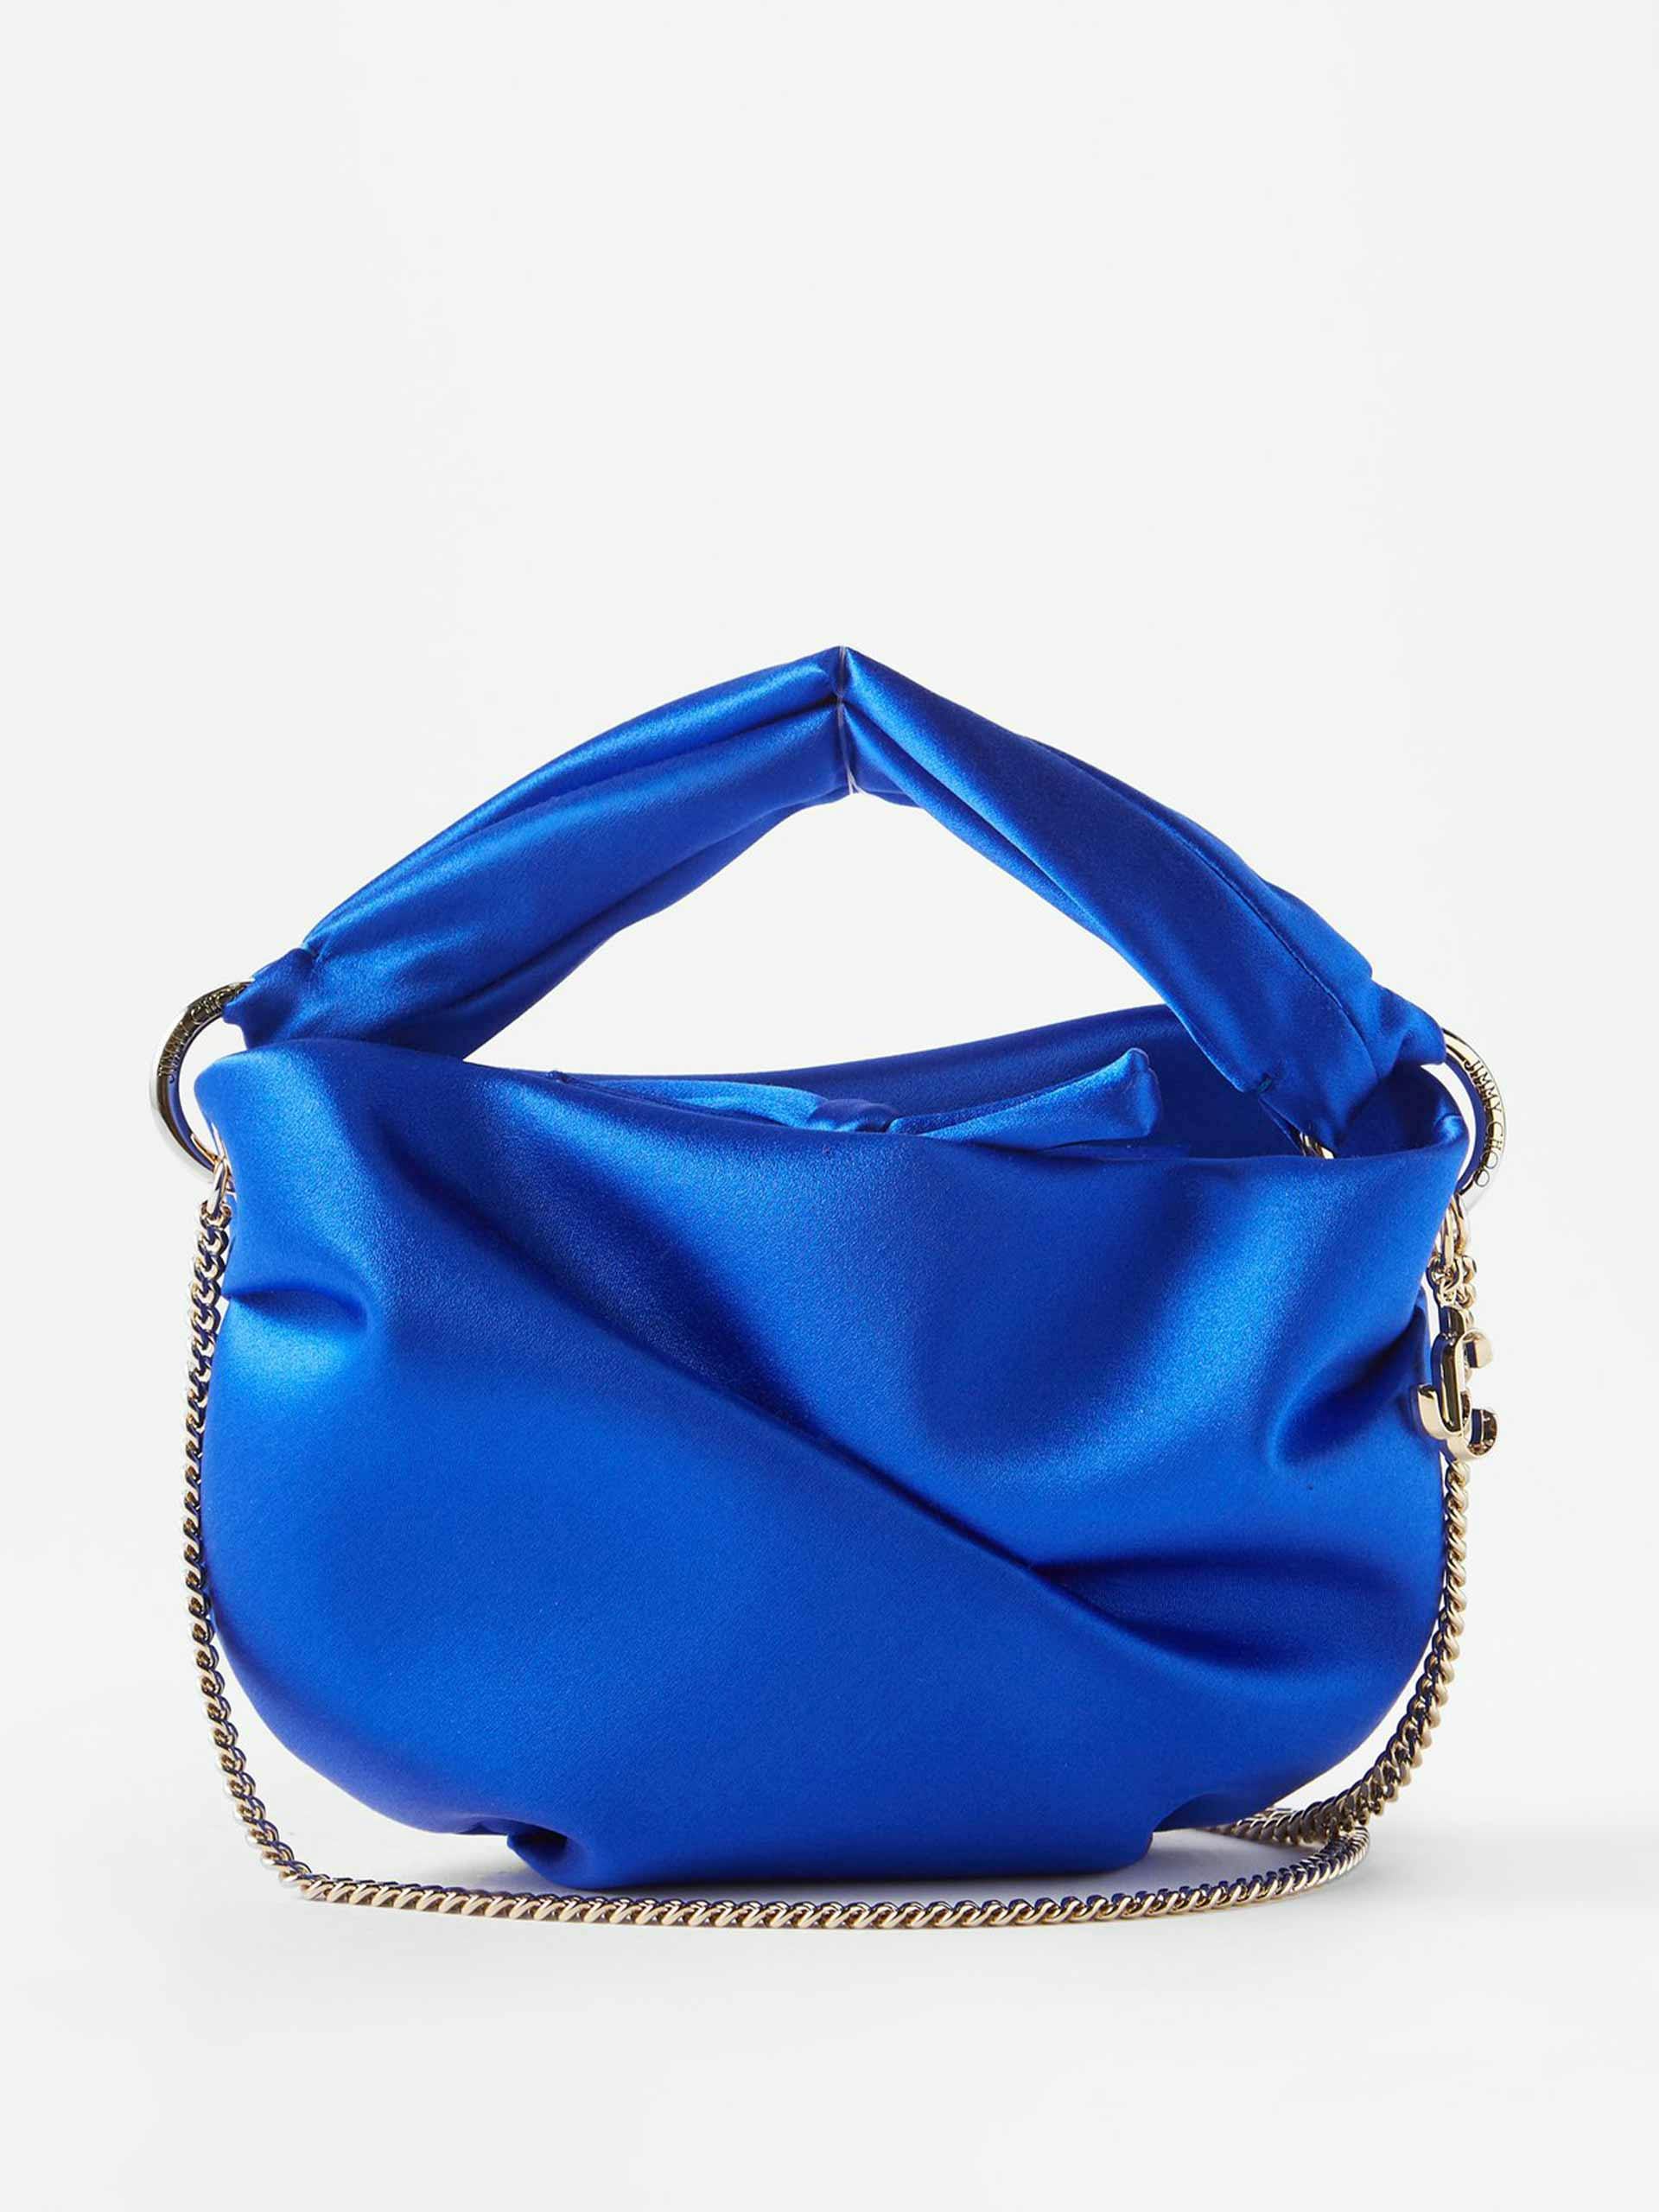 Blue chain-strap bag